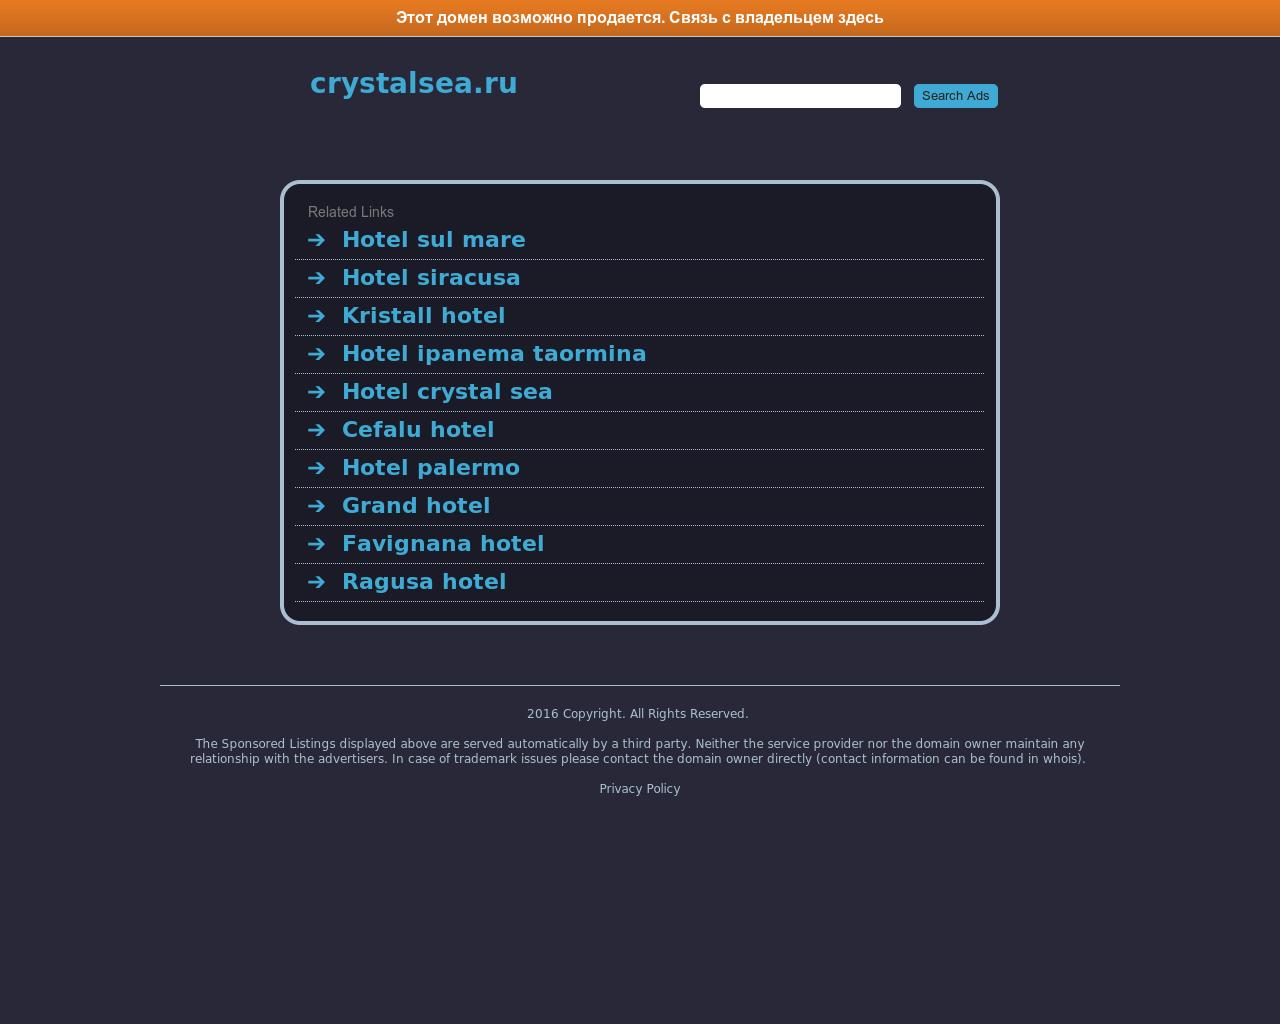 Изображение сайта crystalsea.ru в разрешении 1280x1024